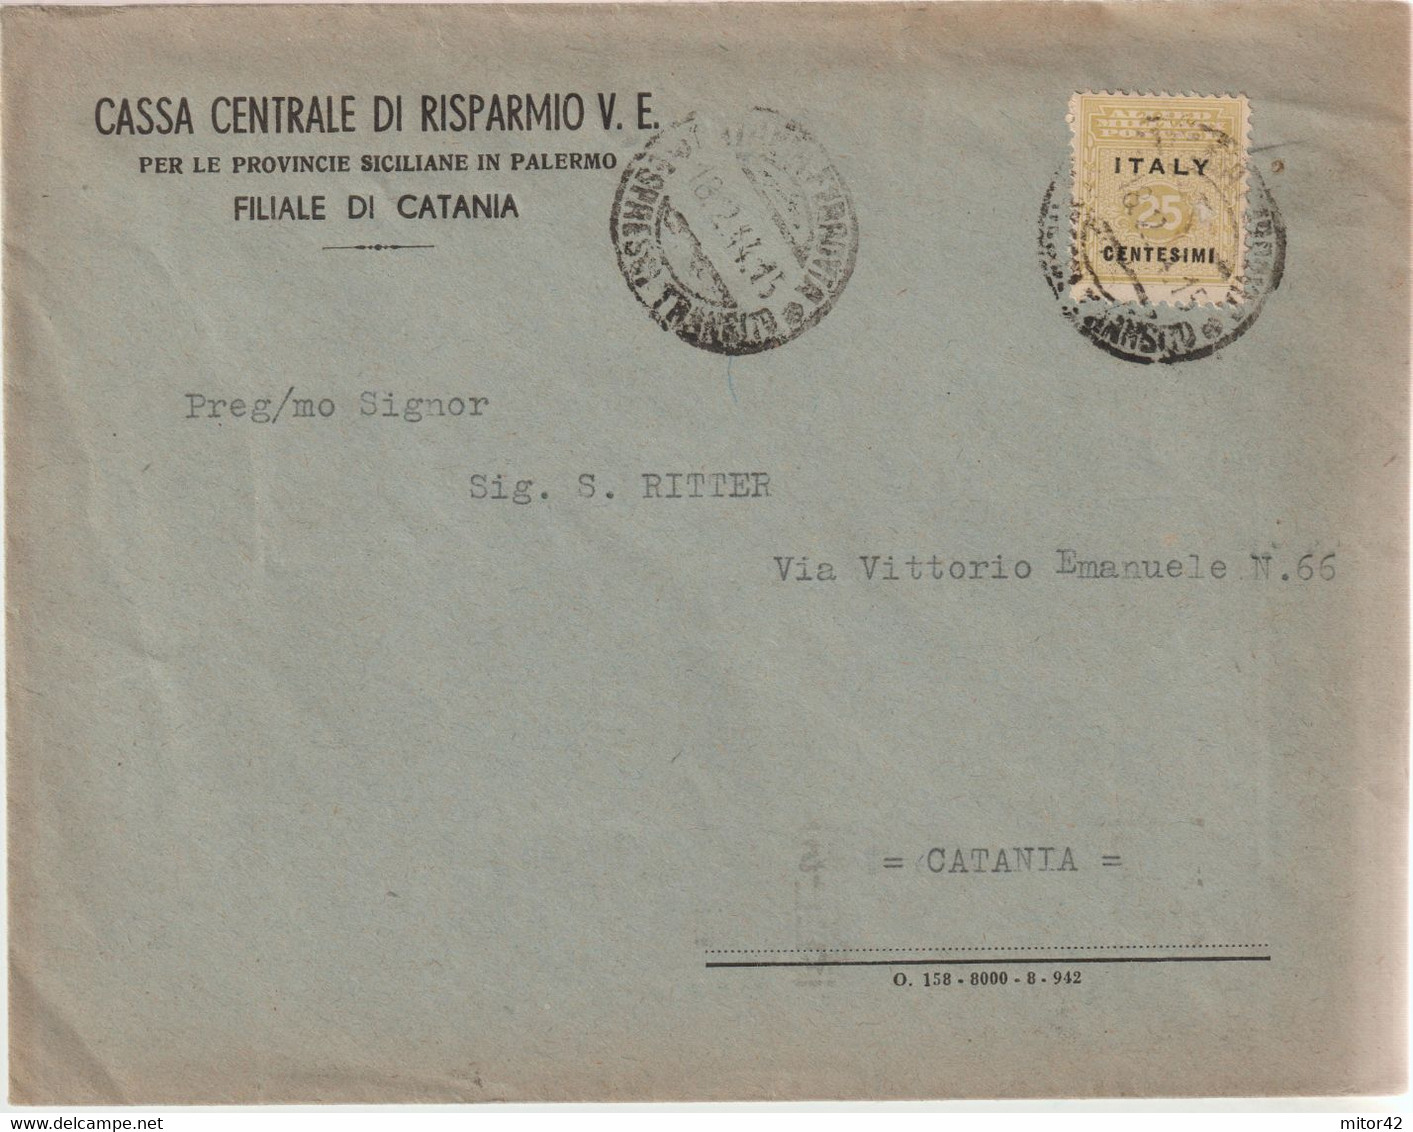 135-Amgot-Occupazione Alleata Sicilia-Busta Intestata-Cassa Centrale Risparmio V.E.-25c. Da E X Catania - Occ. Anglo-américaine: Sicile